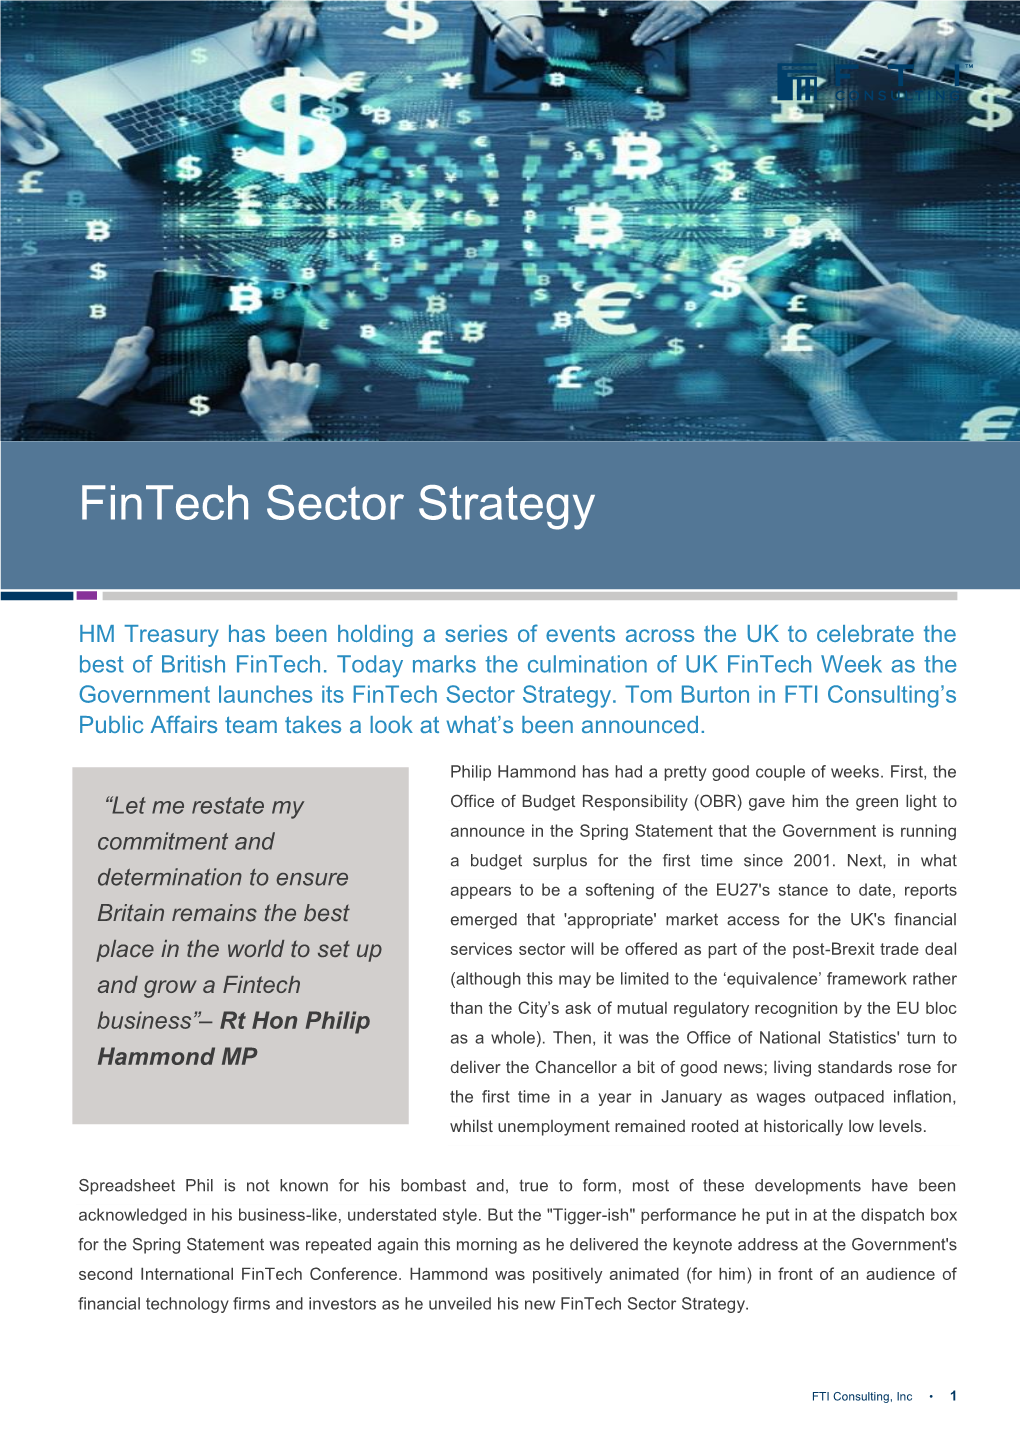 Fintech Sector Strategy